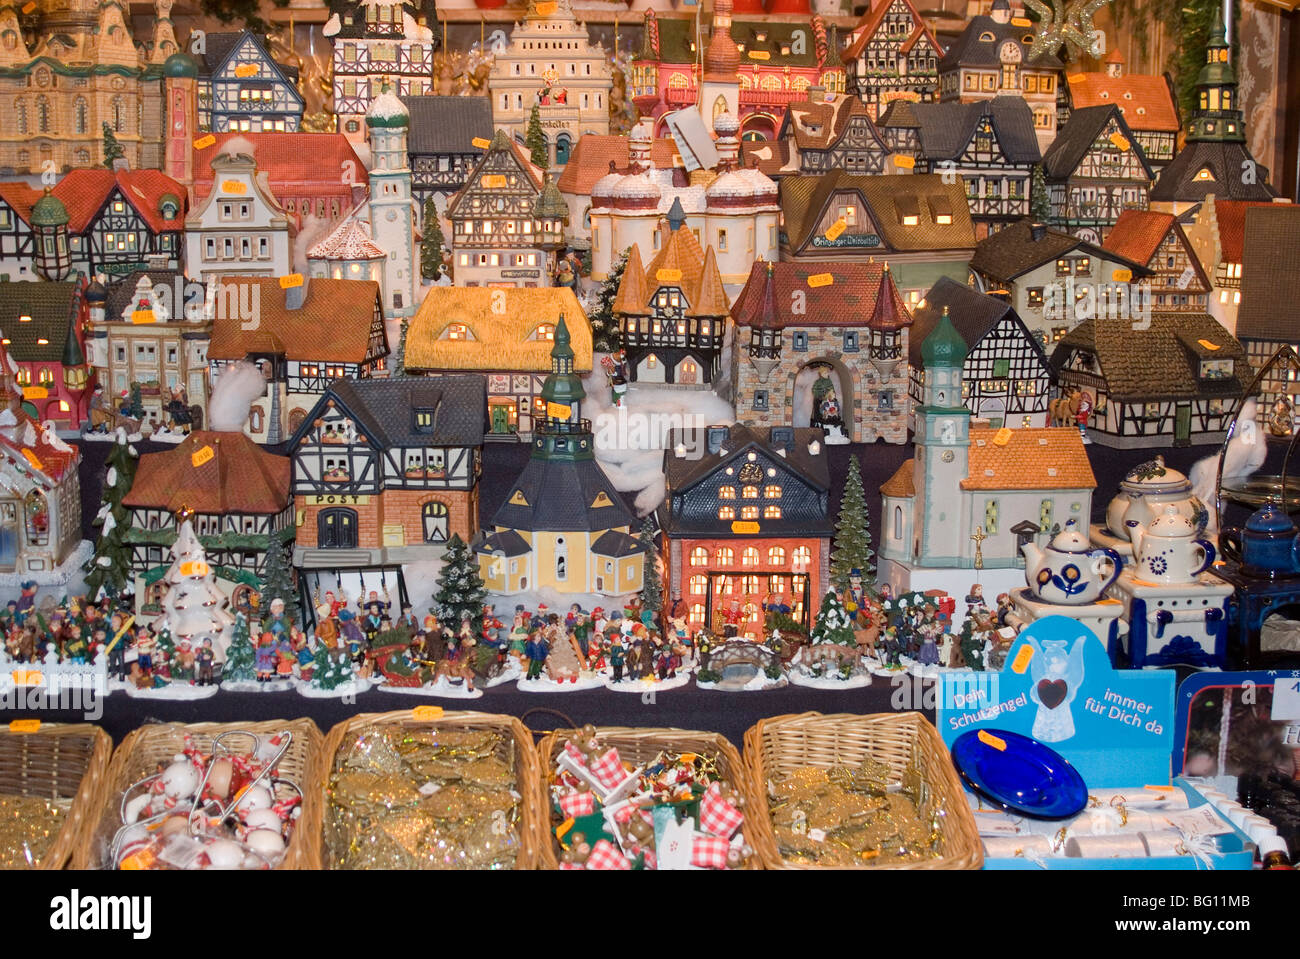 Maisons en céramique, Weihnachtsmarkt (Marché de Noël des enfants), Nuremberg, Bavière, Allemagne, Europe Banque D'Images